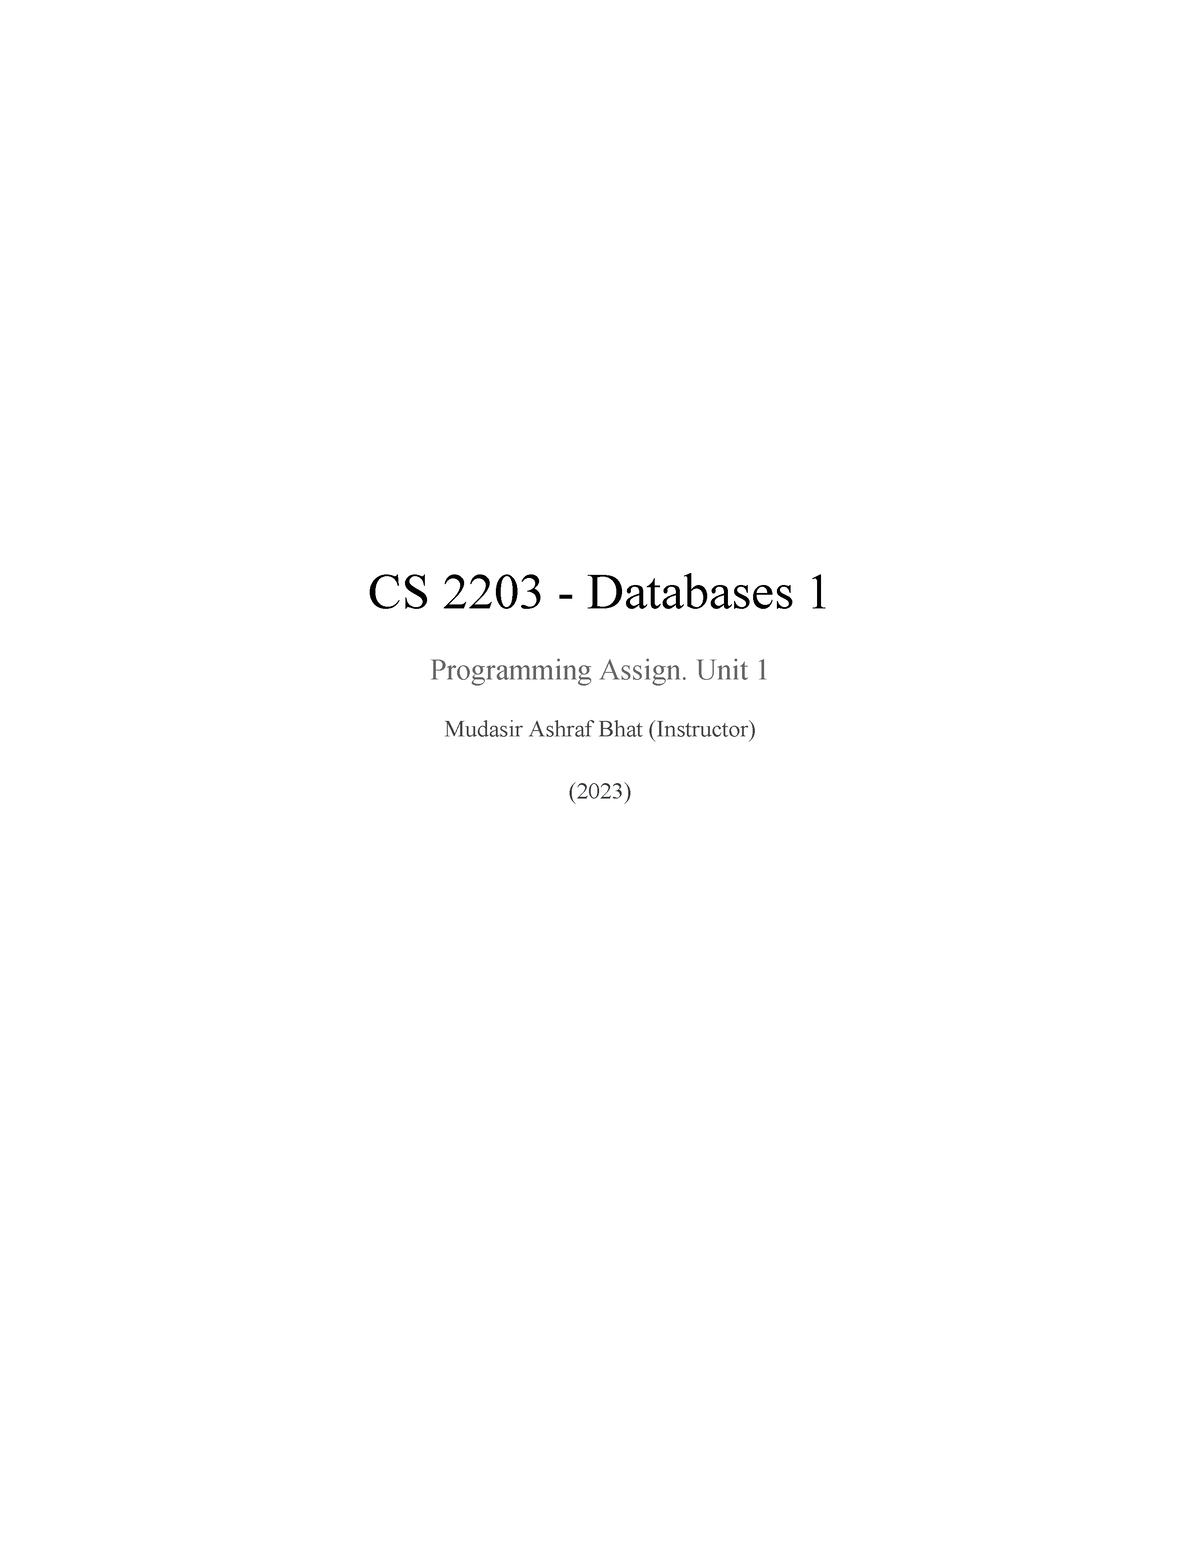 cs 2203 programming assignment unit 1